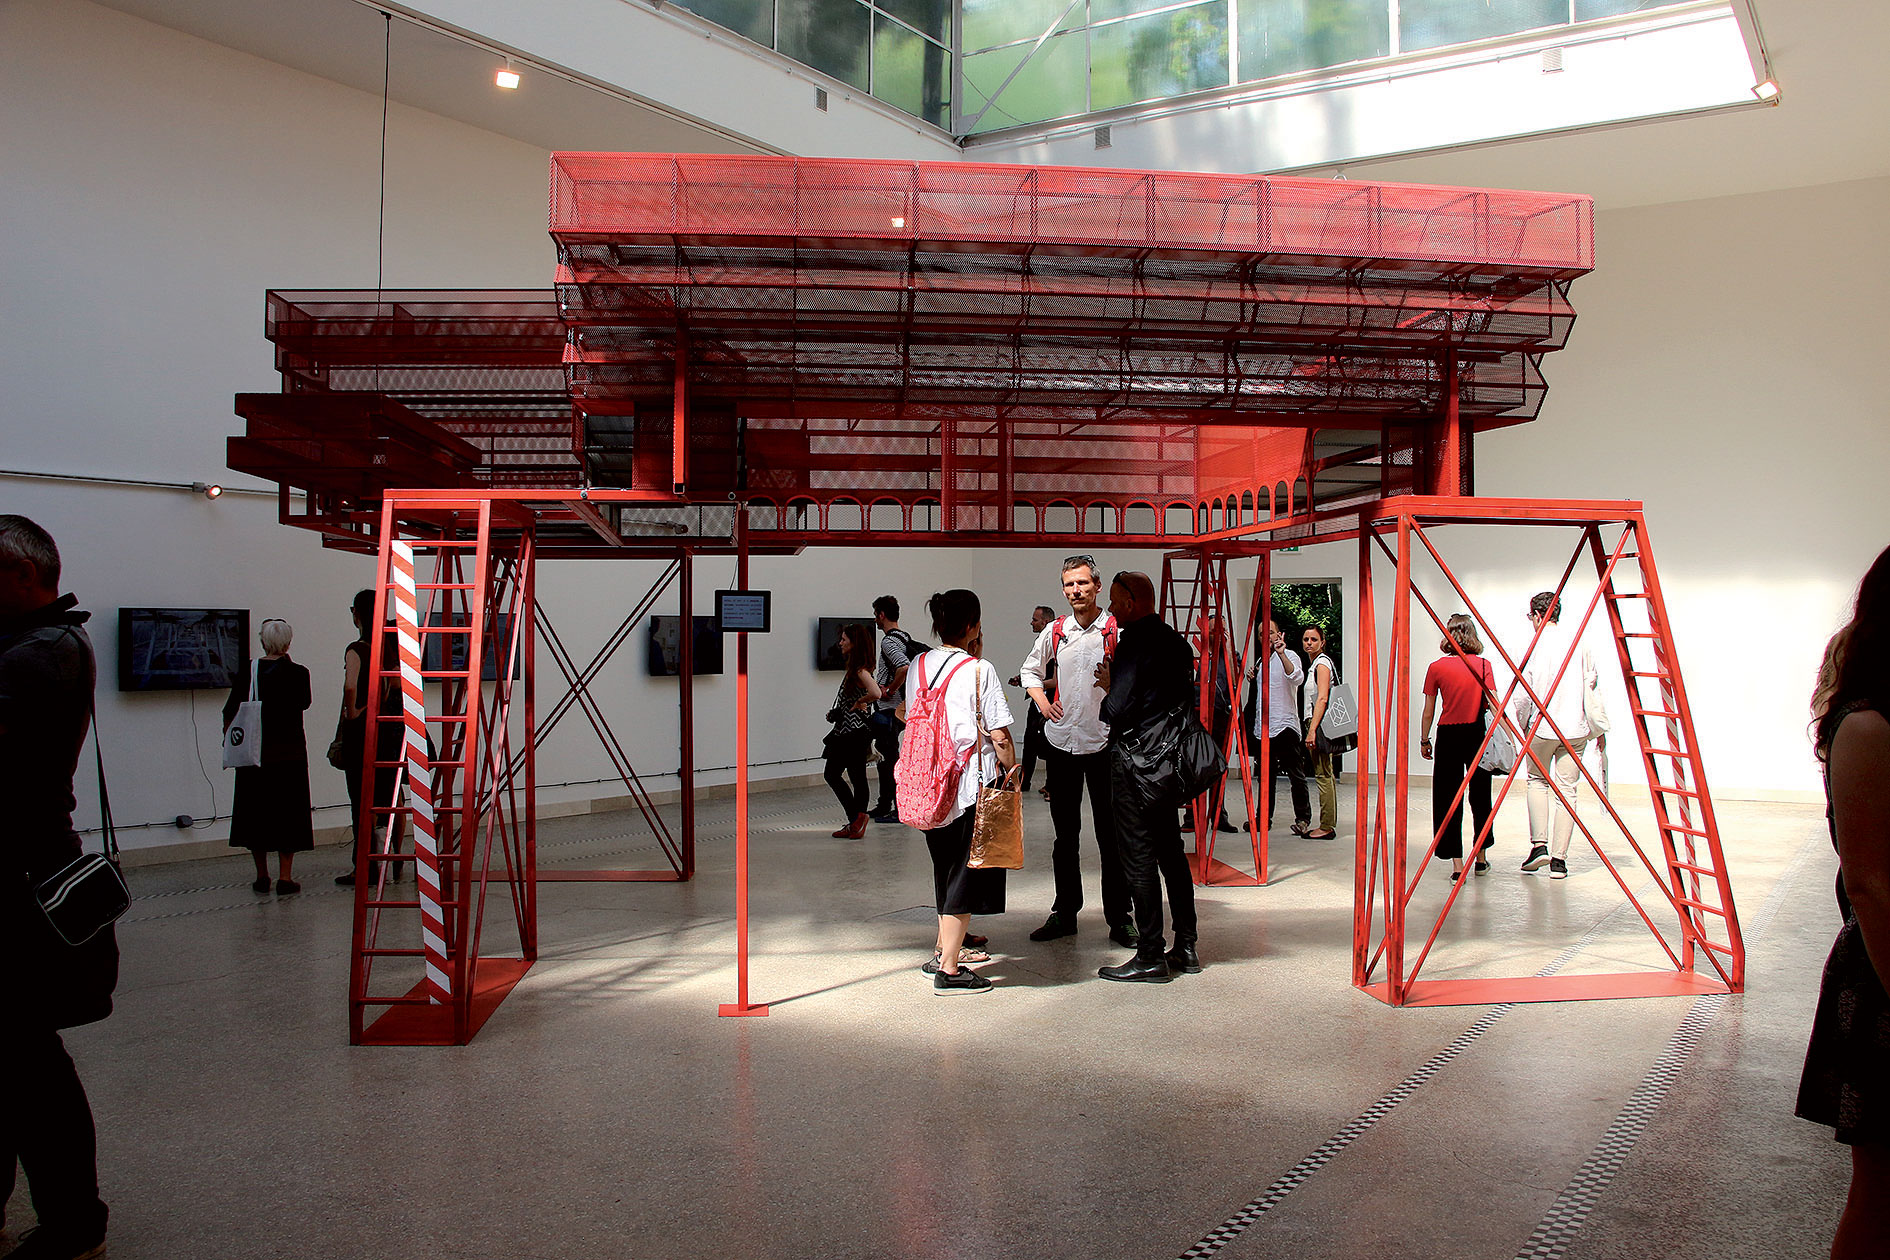 Záber počas neformálneho otvorenia pavilónu ČR a SR na benátskom bienále. Ústredným objektom je trojrozmerný model SNG v červenej farbe, ktorý v zmenšenej mierke zodpovedá postavenému areálu.